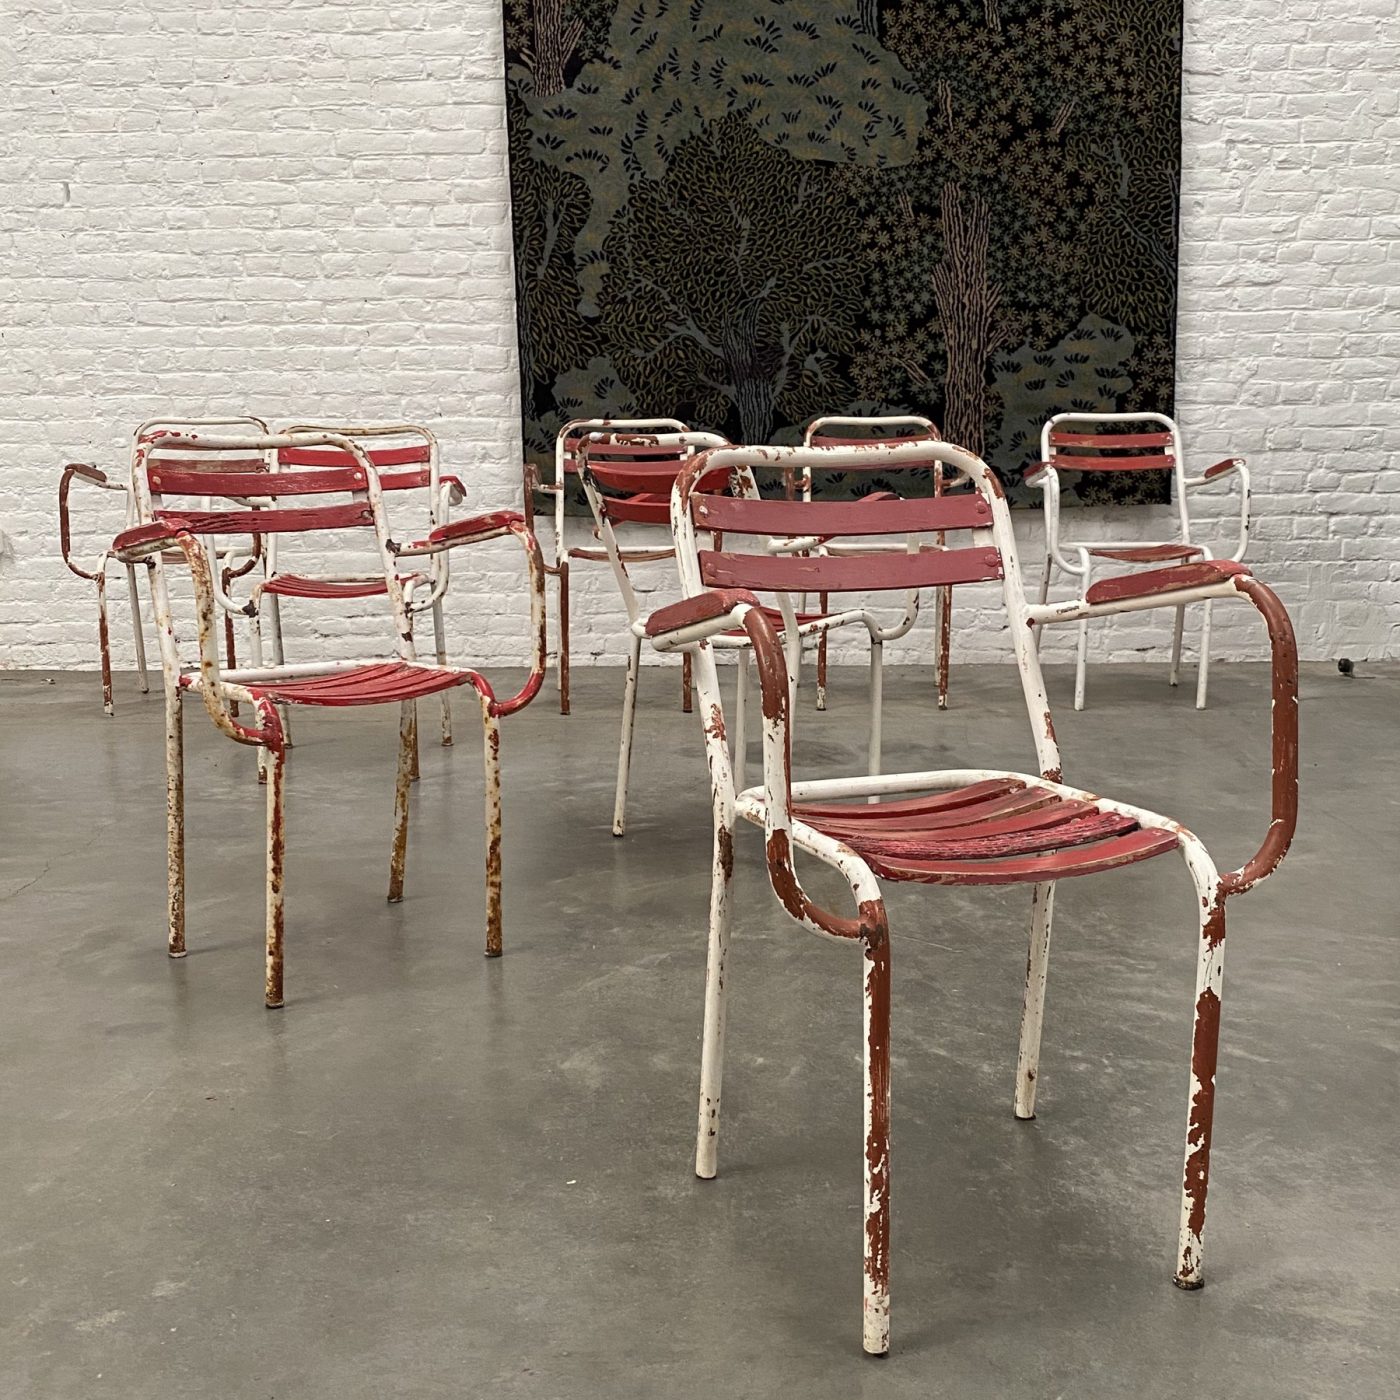 objet-vagabond-garden-chairs0002